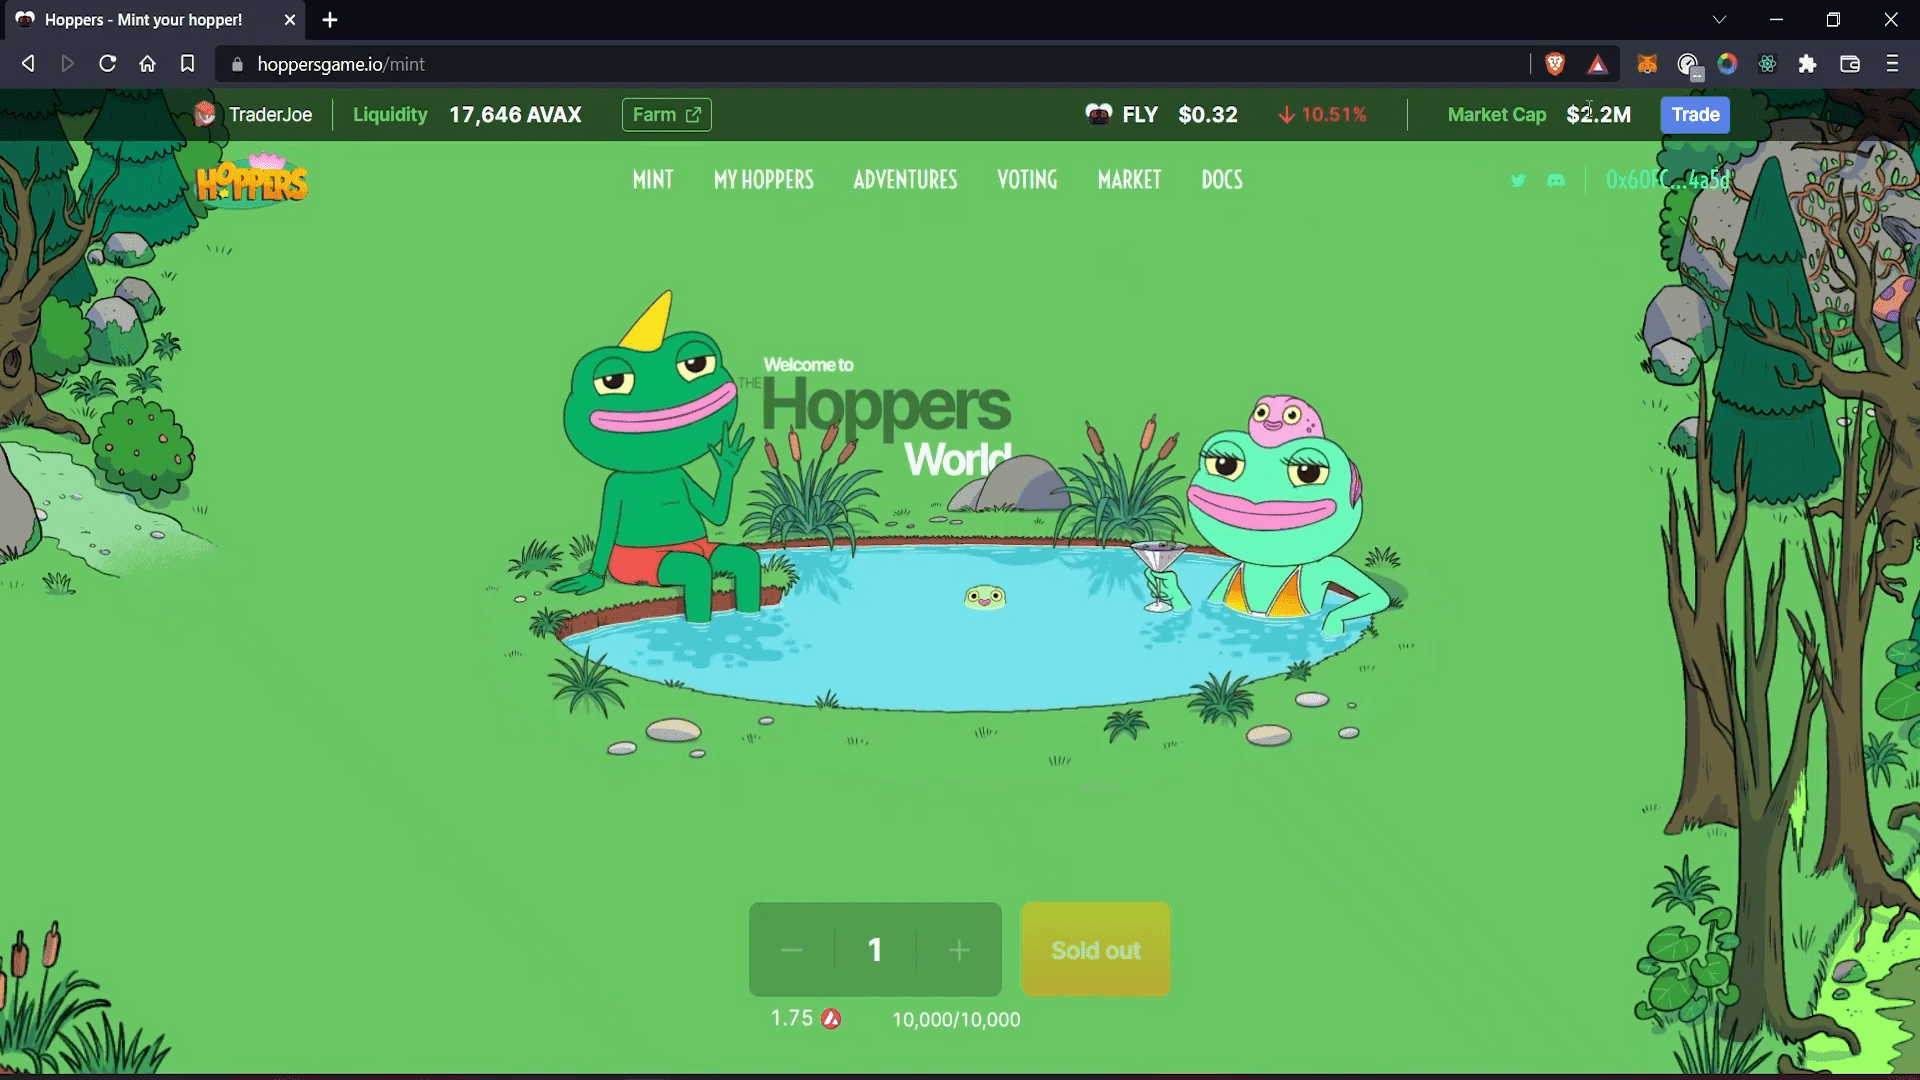 Hoppers Game NFT Game Hoppers Game est un jeu inactif dans lequel les joueurs misent leurs Hopper NFT dans différentes aventures pour gagner $FLY.